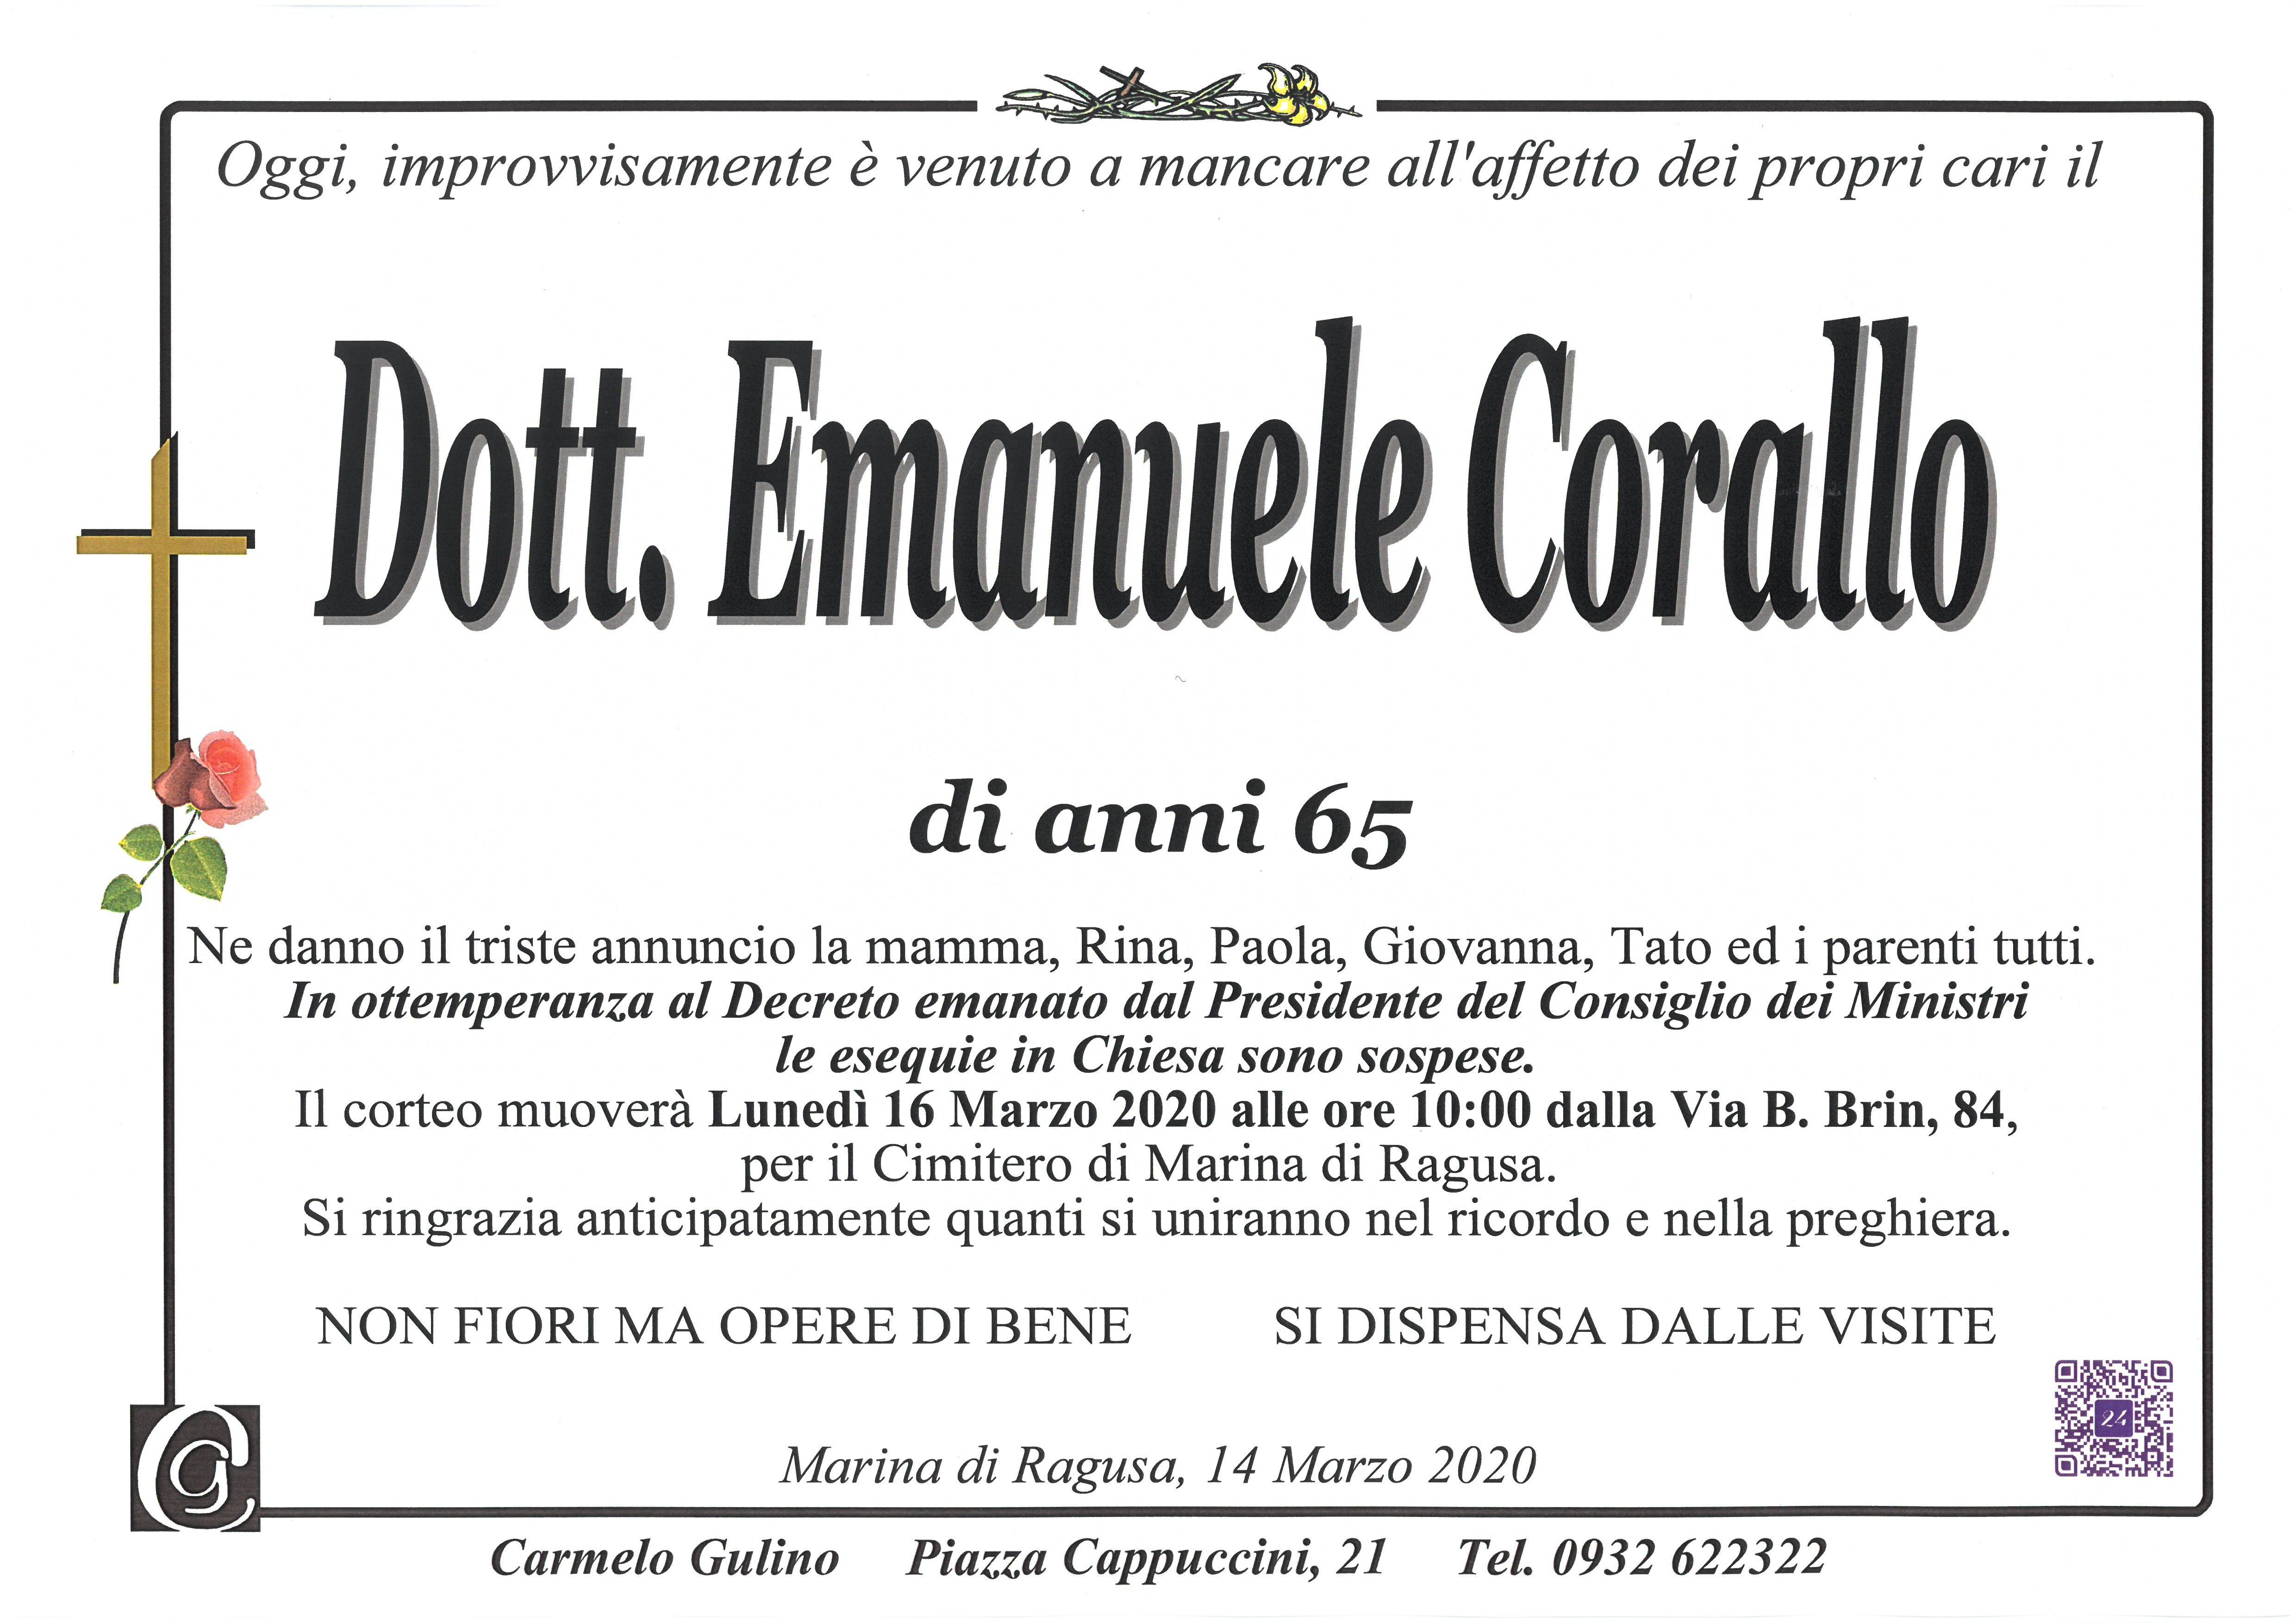 Emanuele Corallo